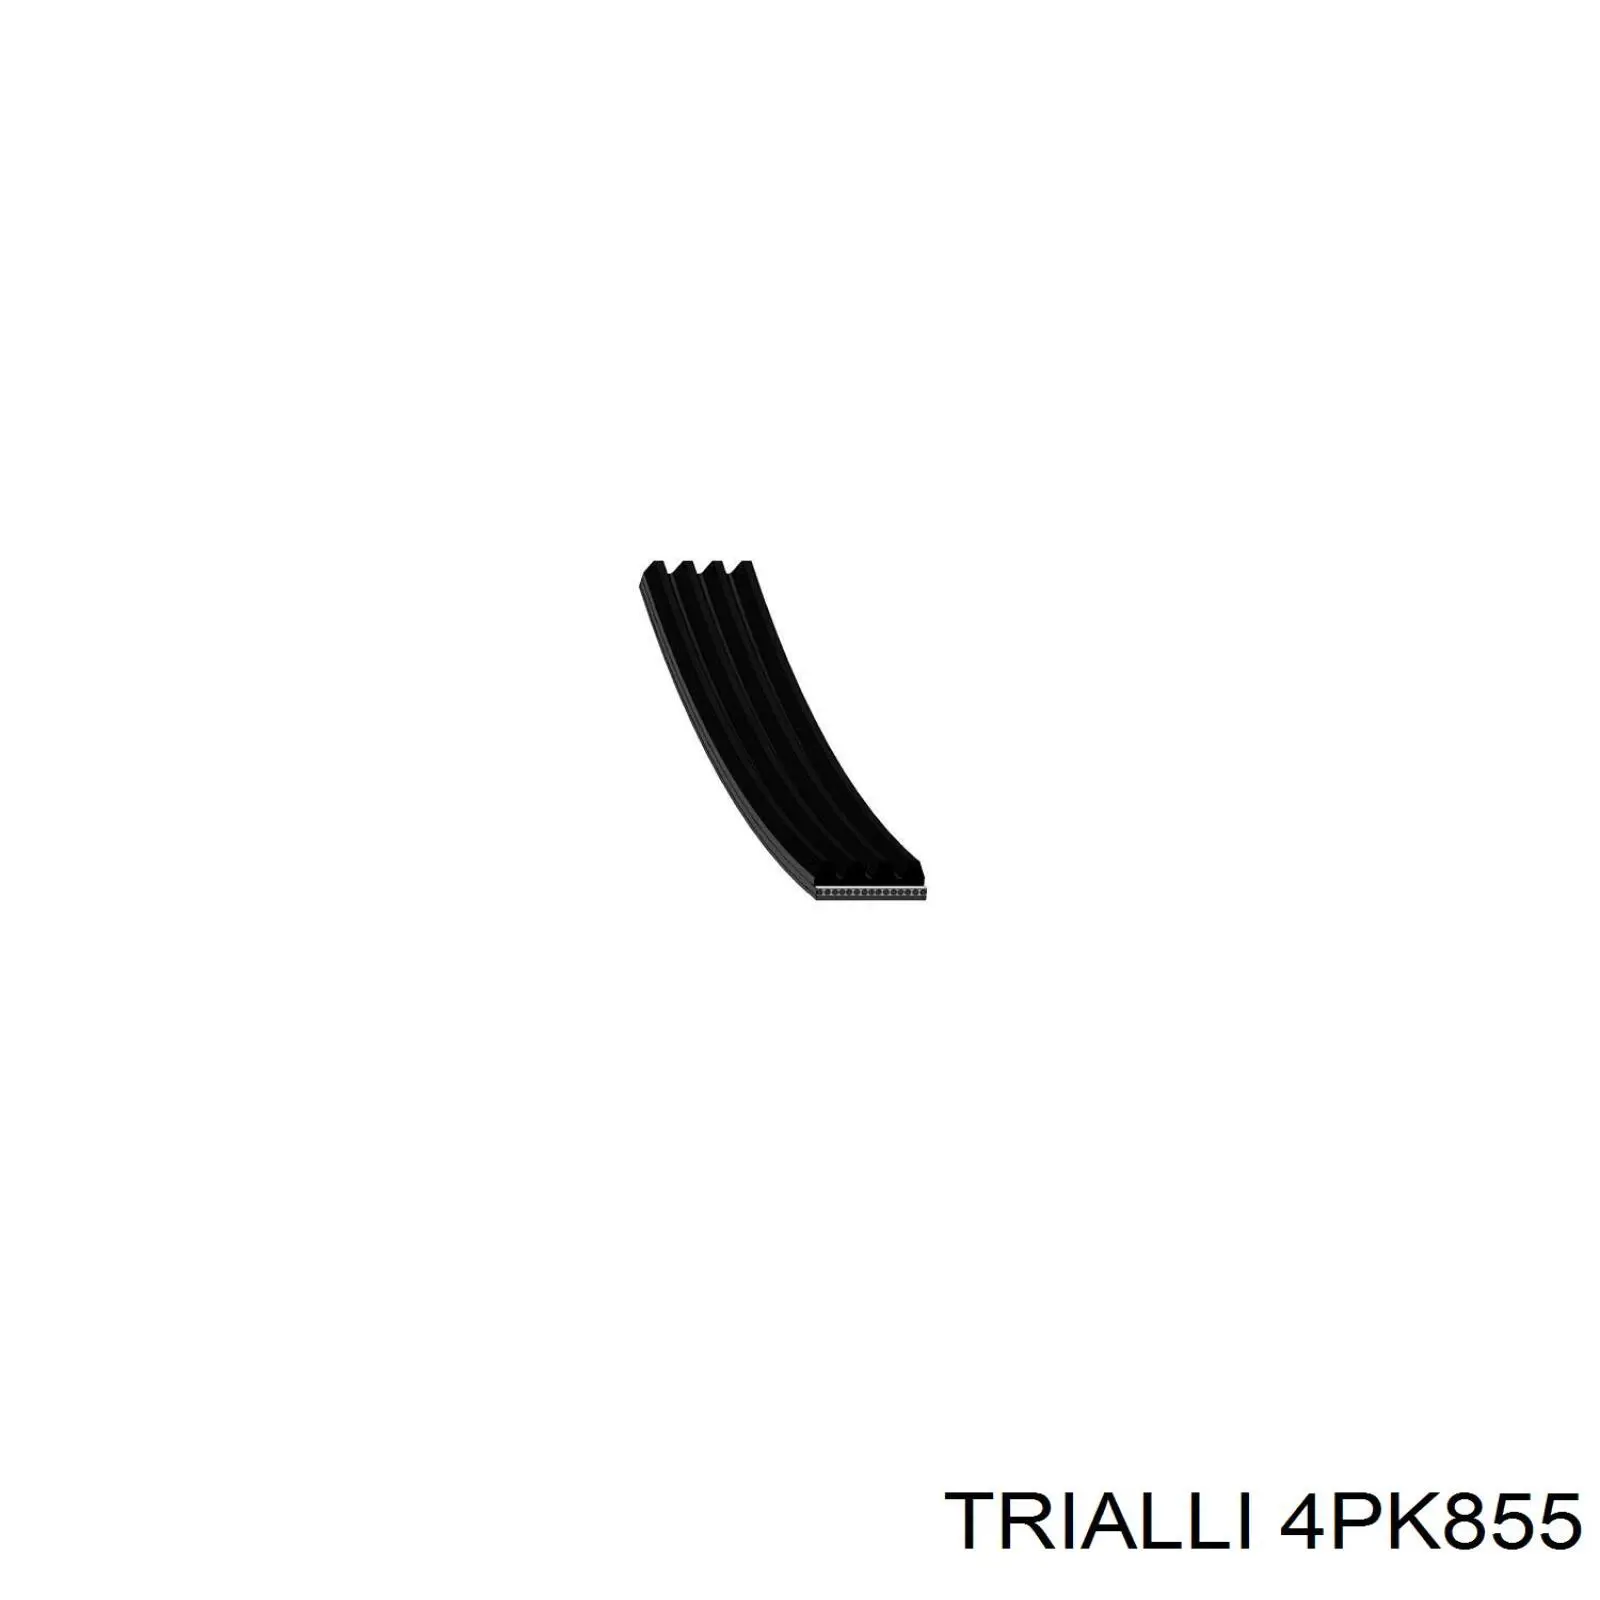 4PK855 Trialli correa trapezoidal